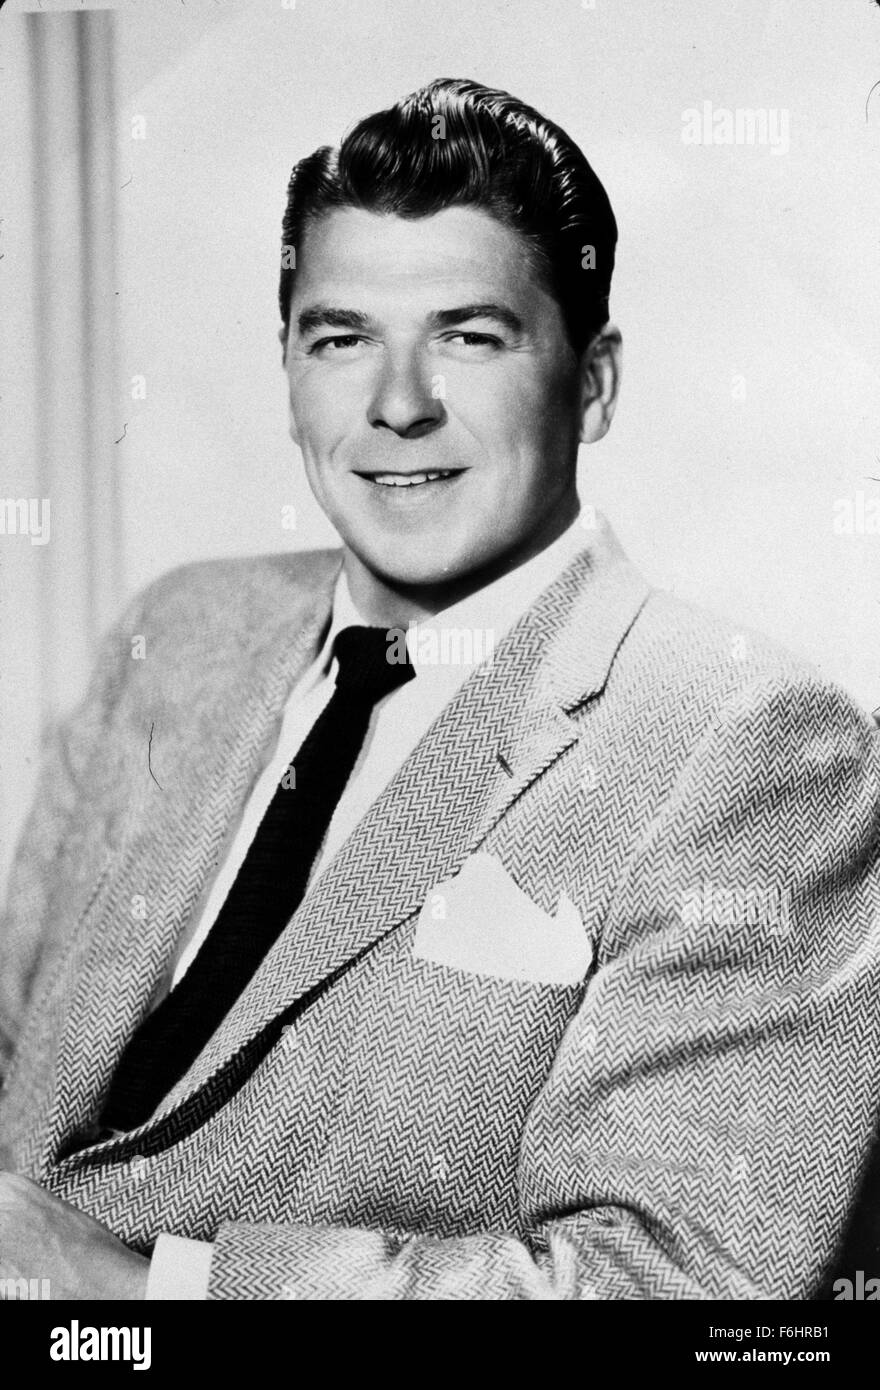 1956, le titre du film : GENERAL ELECTRIC THEATRE, Studio : CBS, Photo : Ronald Reagan, studio, Portrait, Sport veste. (Crédit Image : SNAP) Banque D'Images